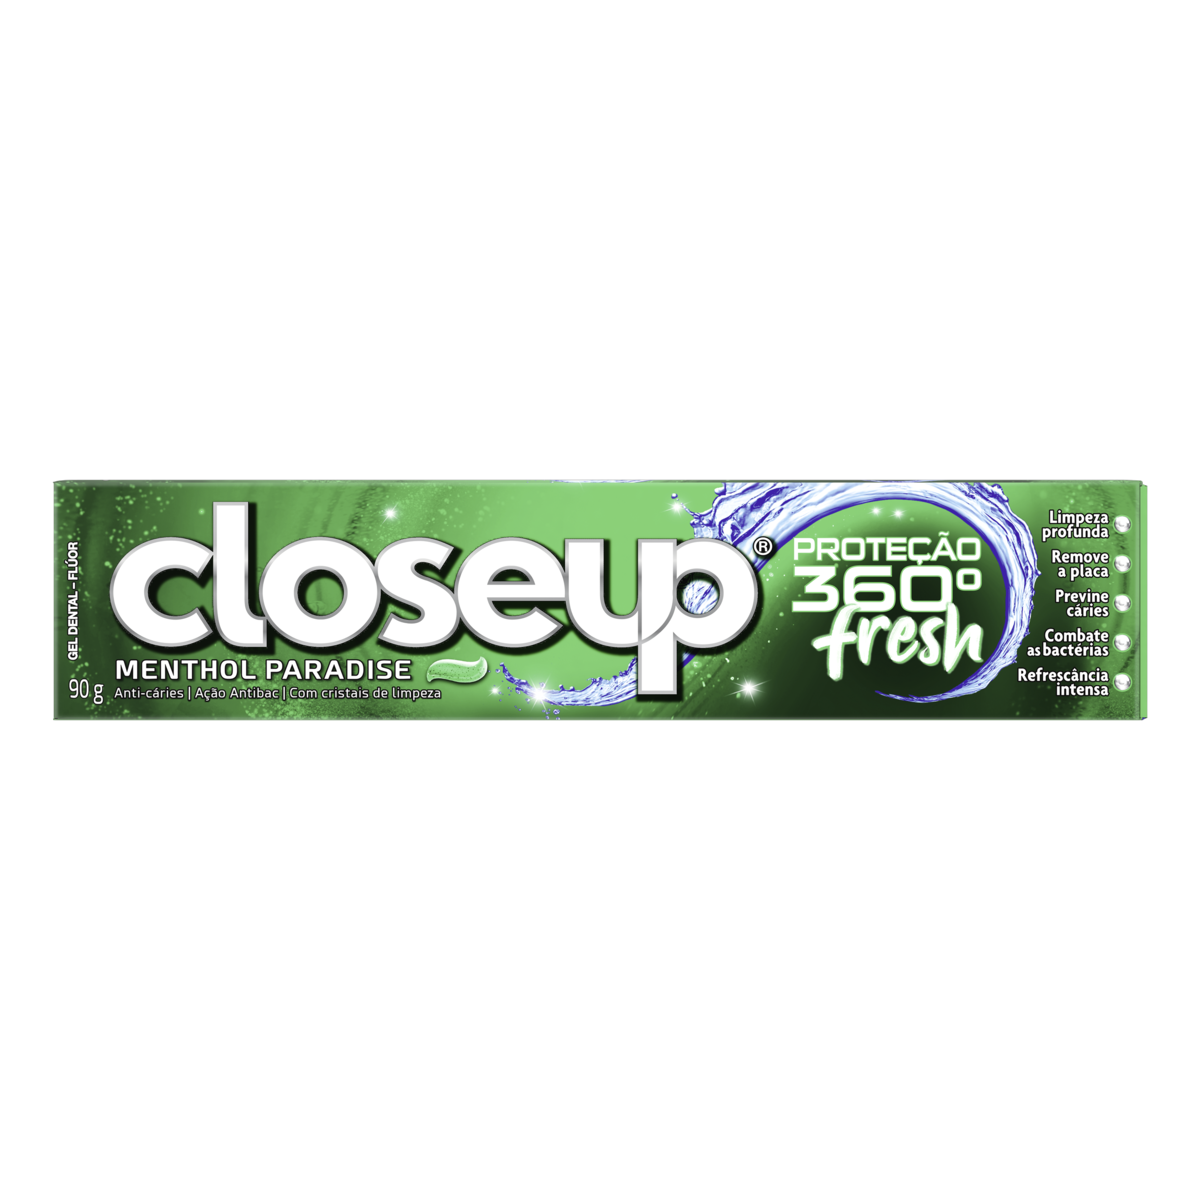 Gel Dental Menthol Paradise Closeup Proteção 360° Fresh Caixa 90g